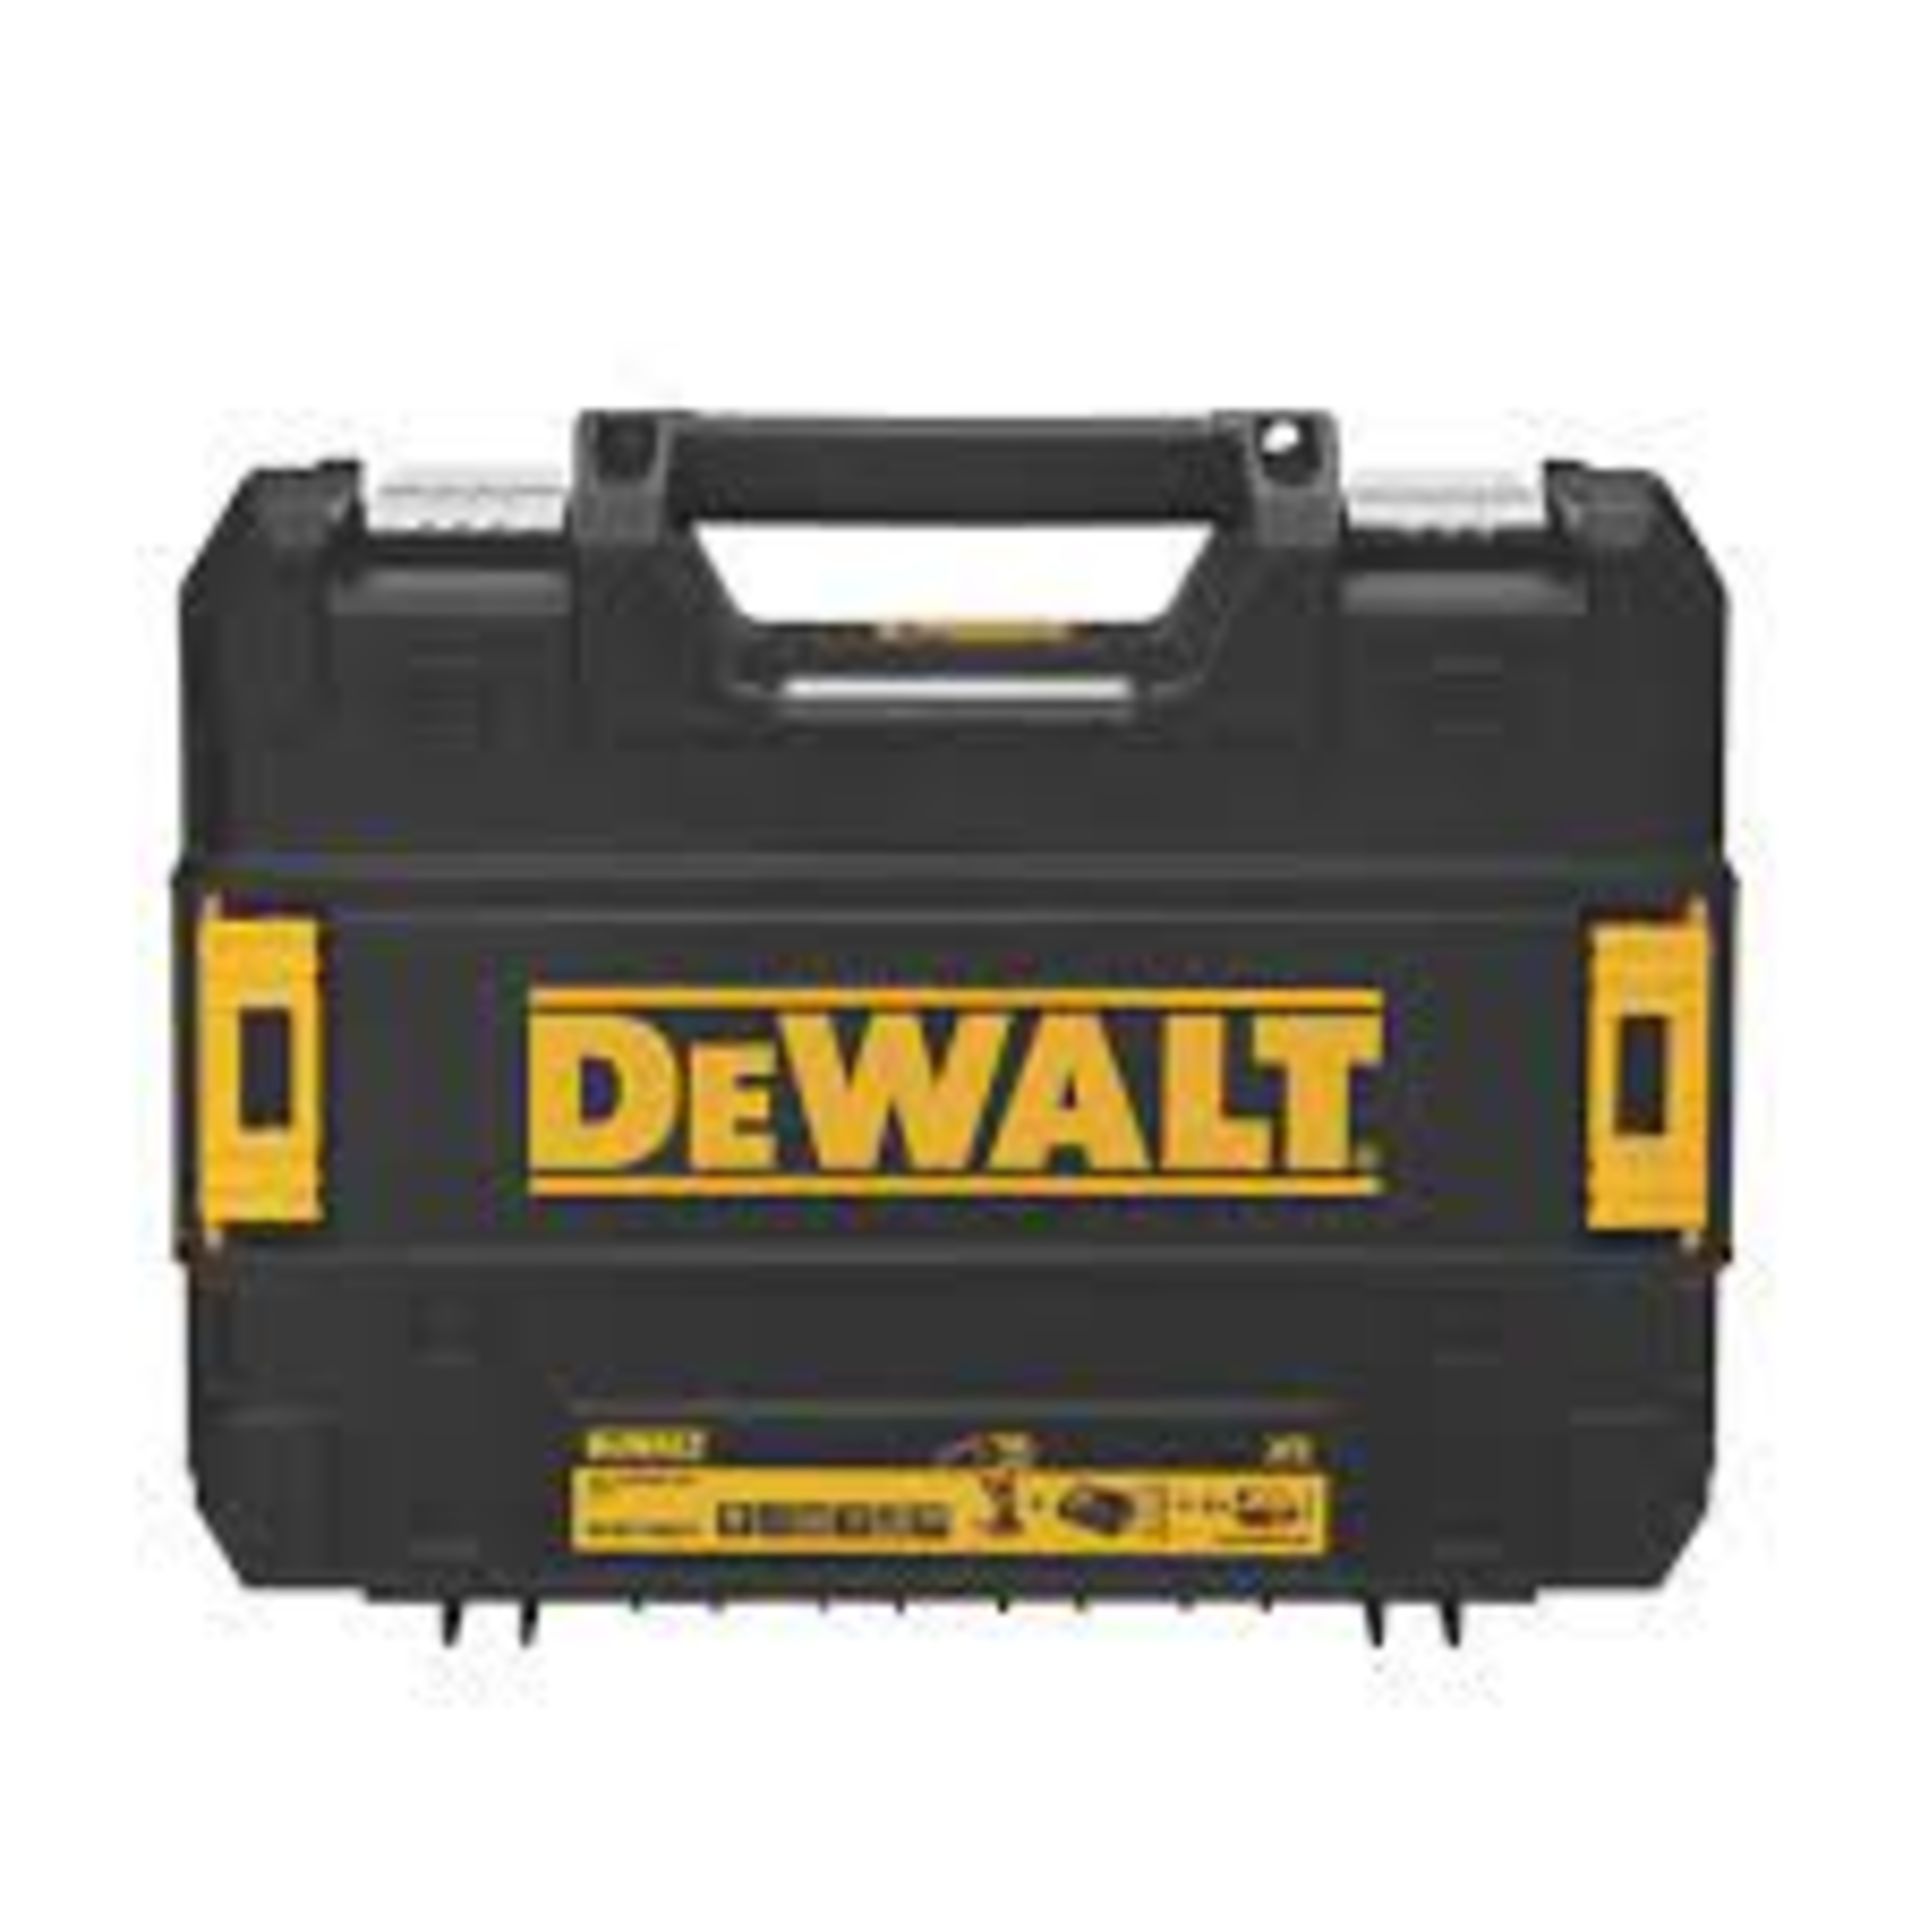 Dewalt Carry Case (empty) to fit DCD778P2T. - ER48